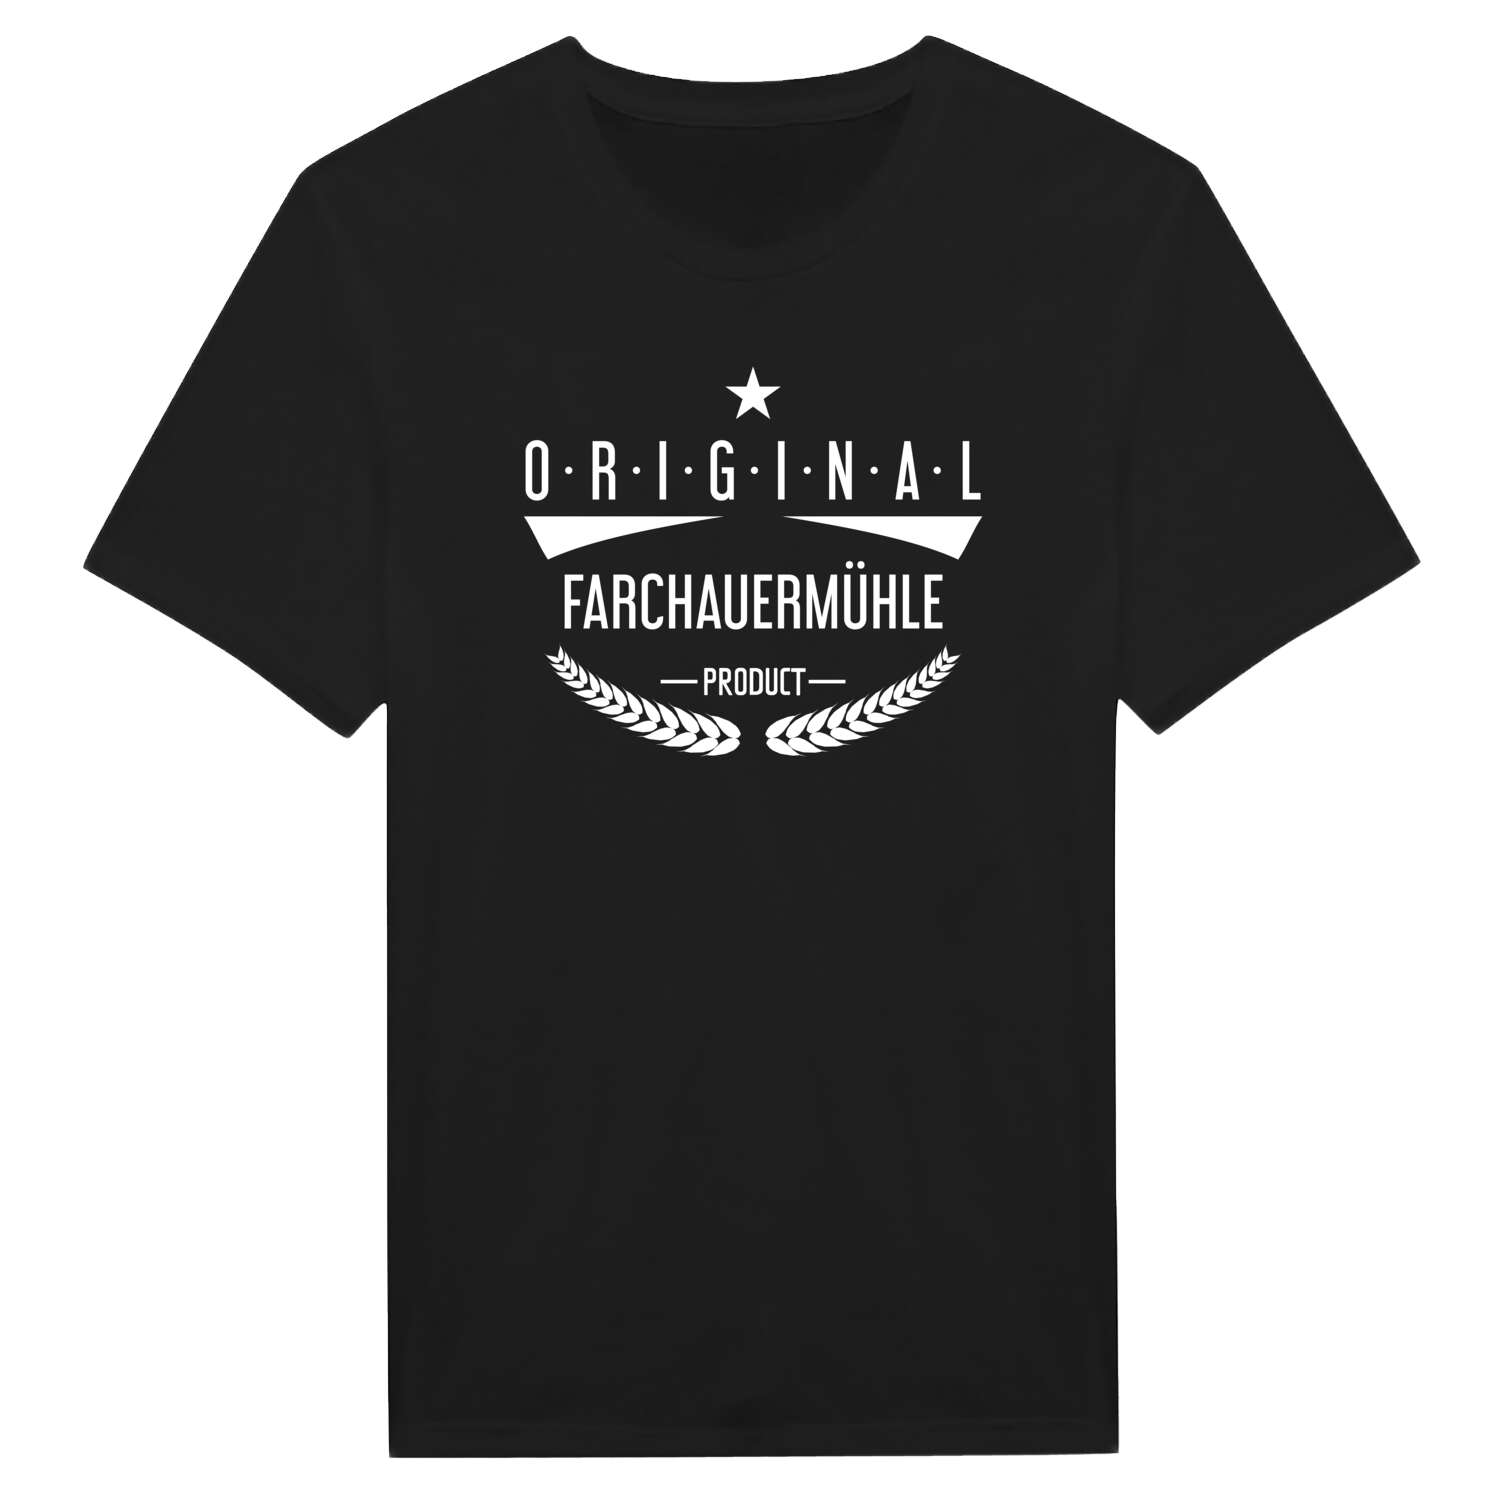 Farchauermühle T-Shirt »Original Product«